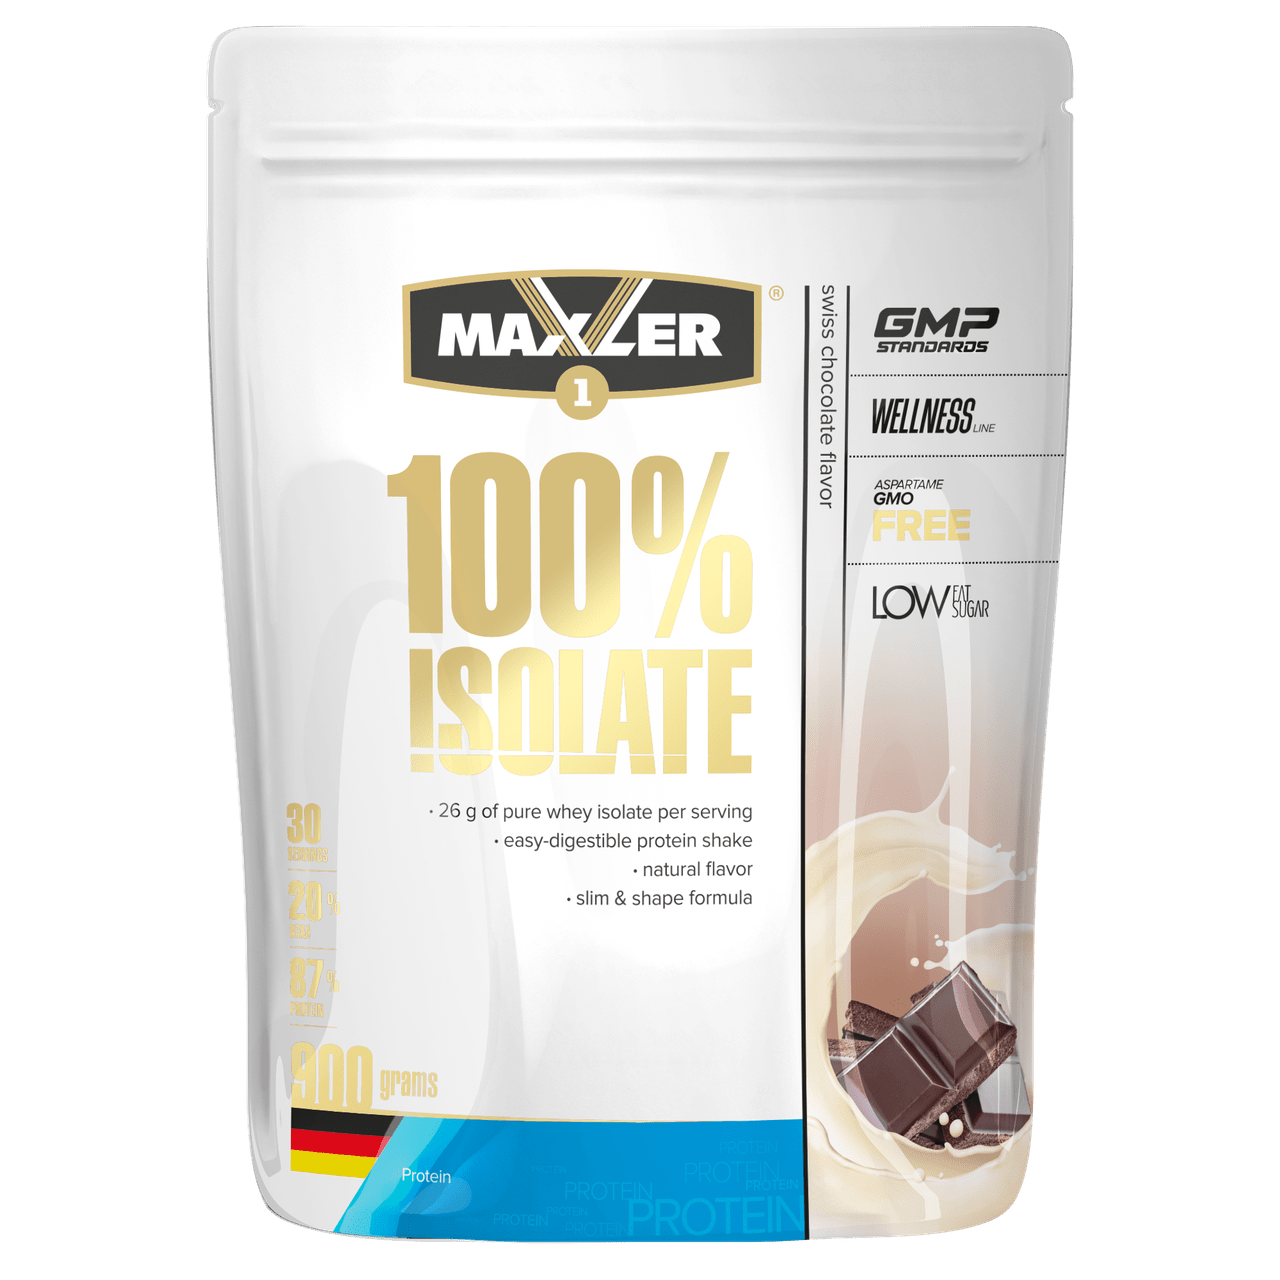 Сывороточный протеин изолят Maxler 100% Isolate (450 г) макслер swiss chocolate,  мл, Maxler. Сывороточный изолят. Сухая мышечная масса Снижение веса Восстановление Антикатаболические свойства 